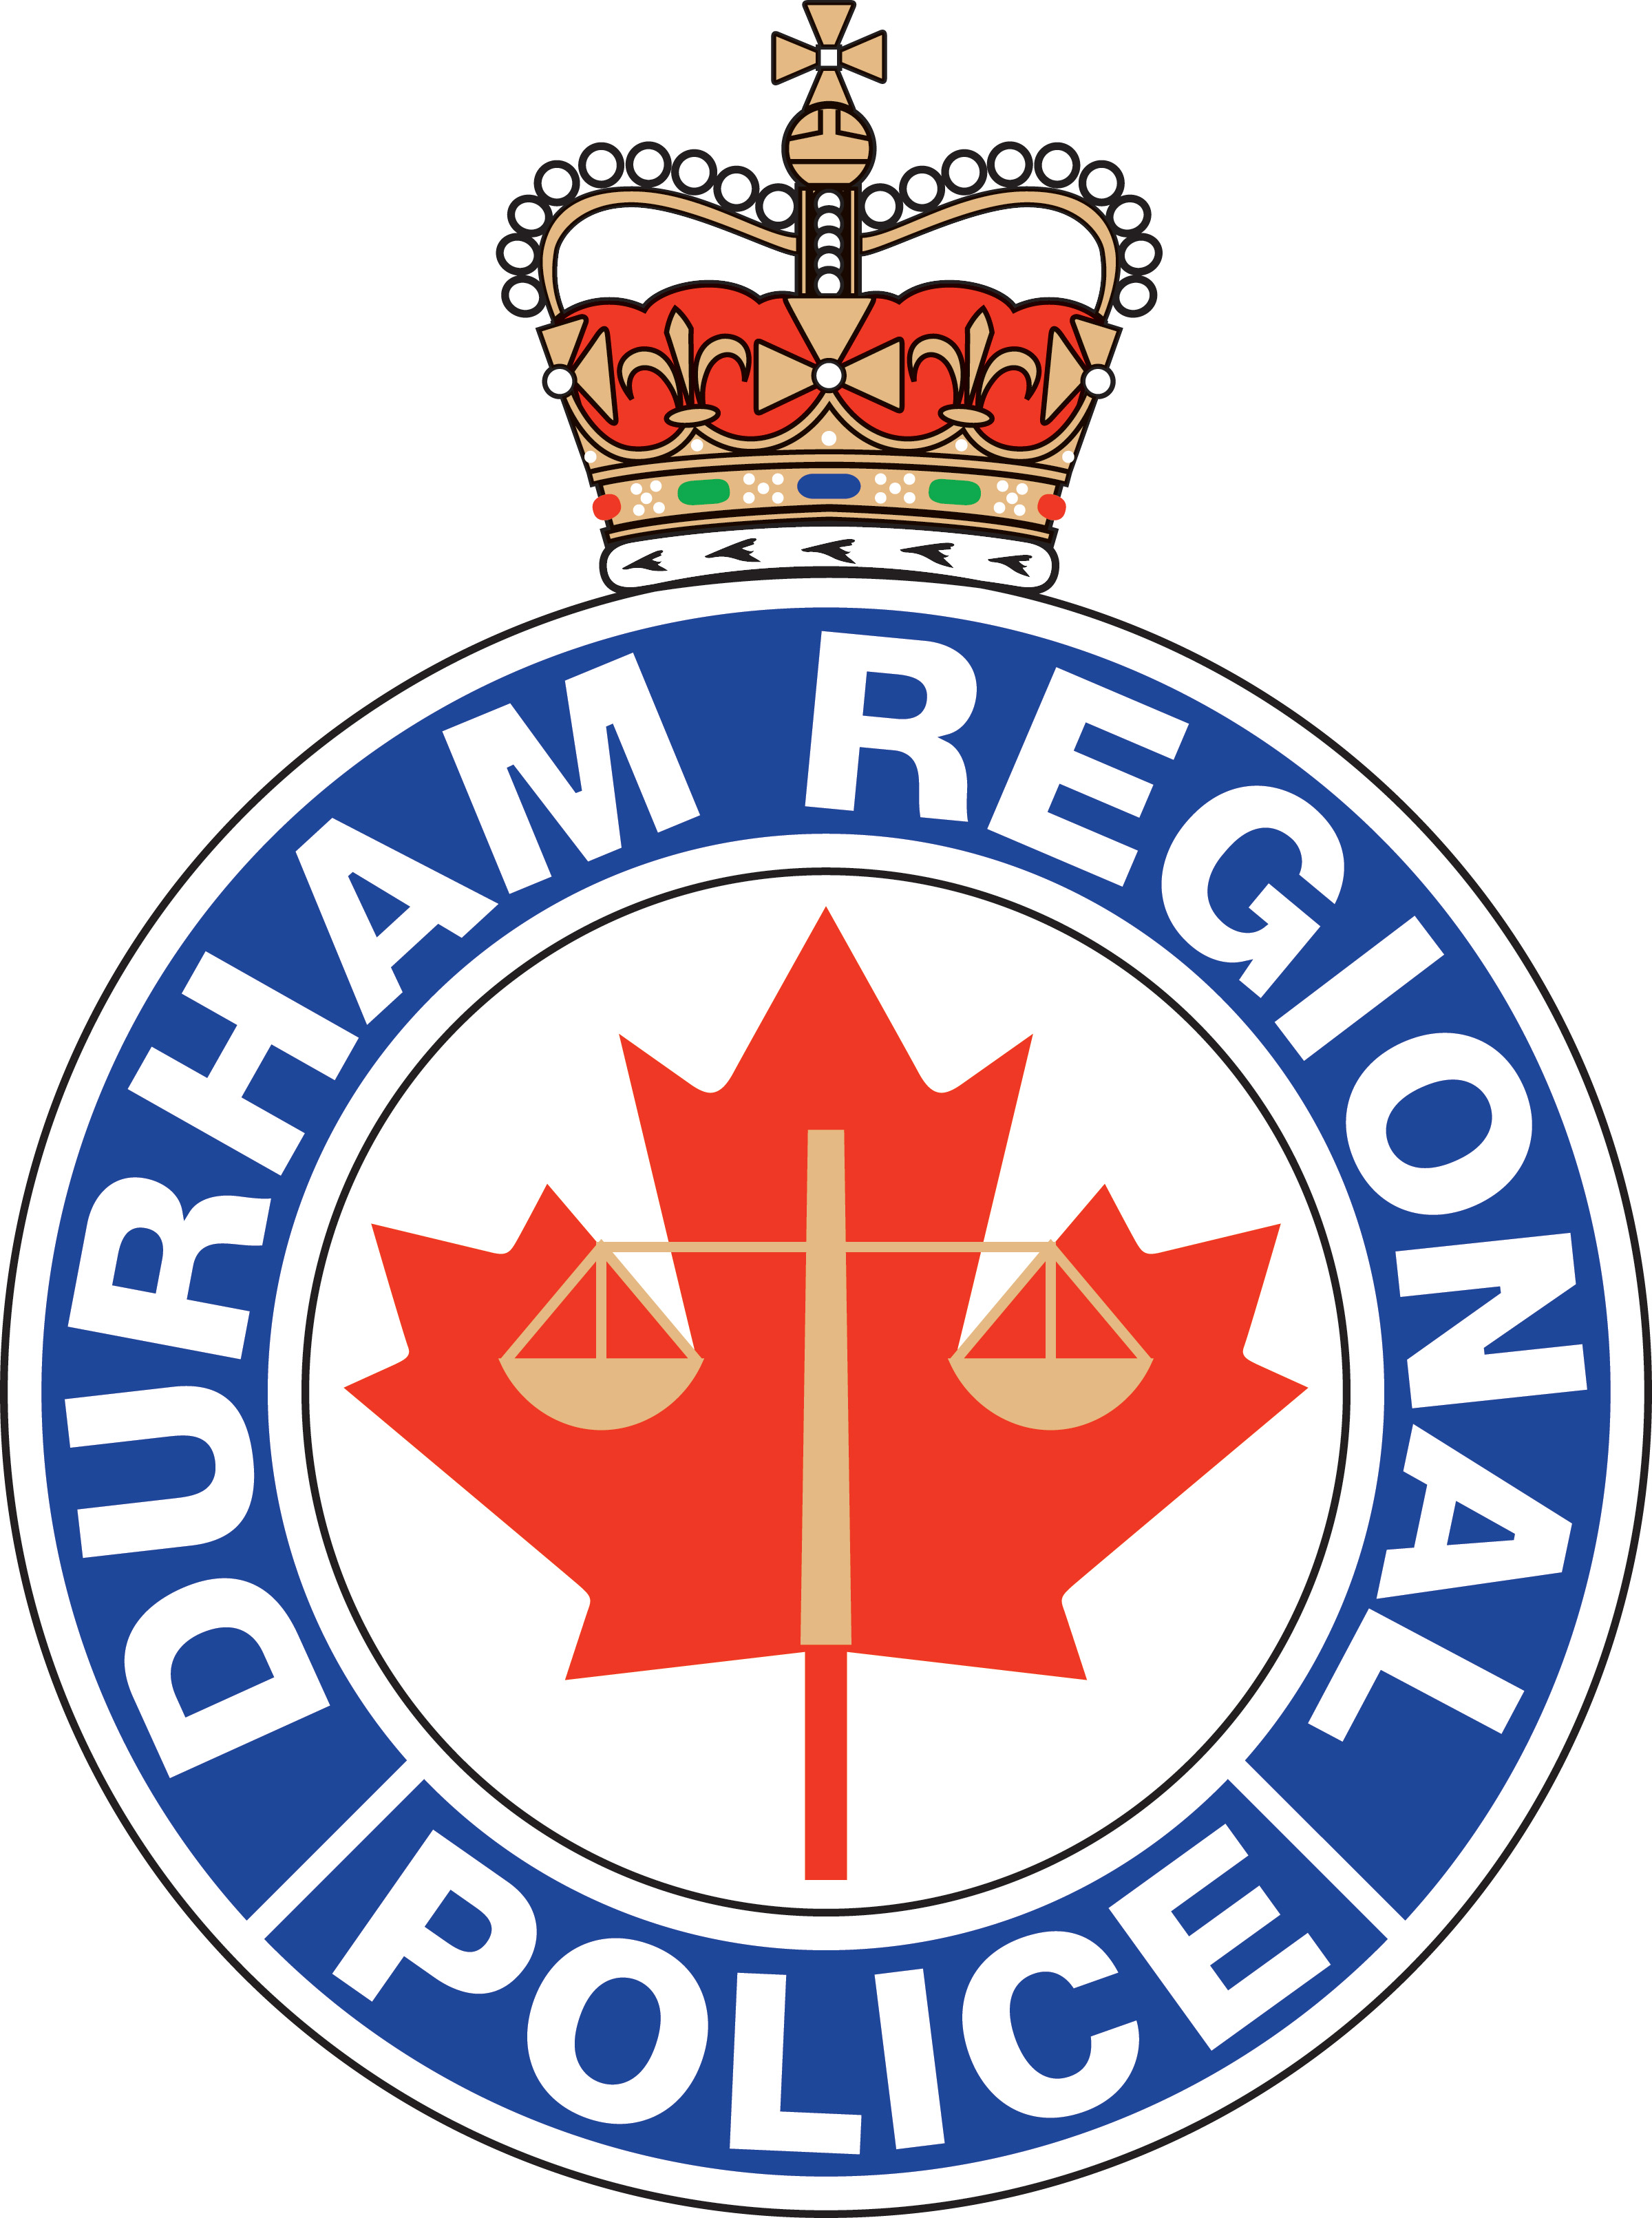 Durham Regional Police logo